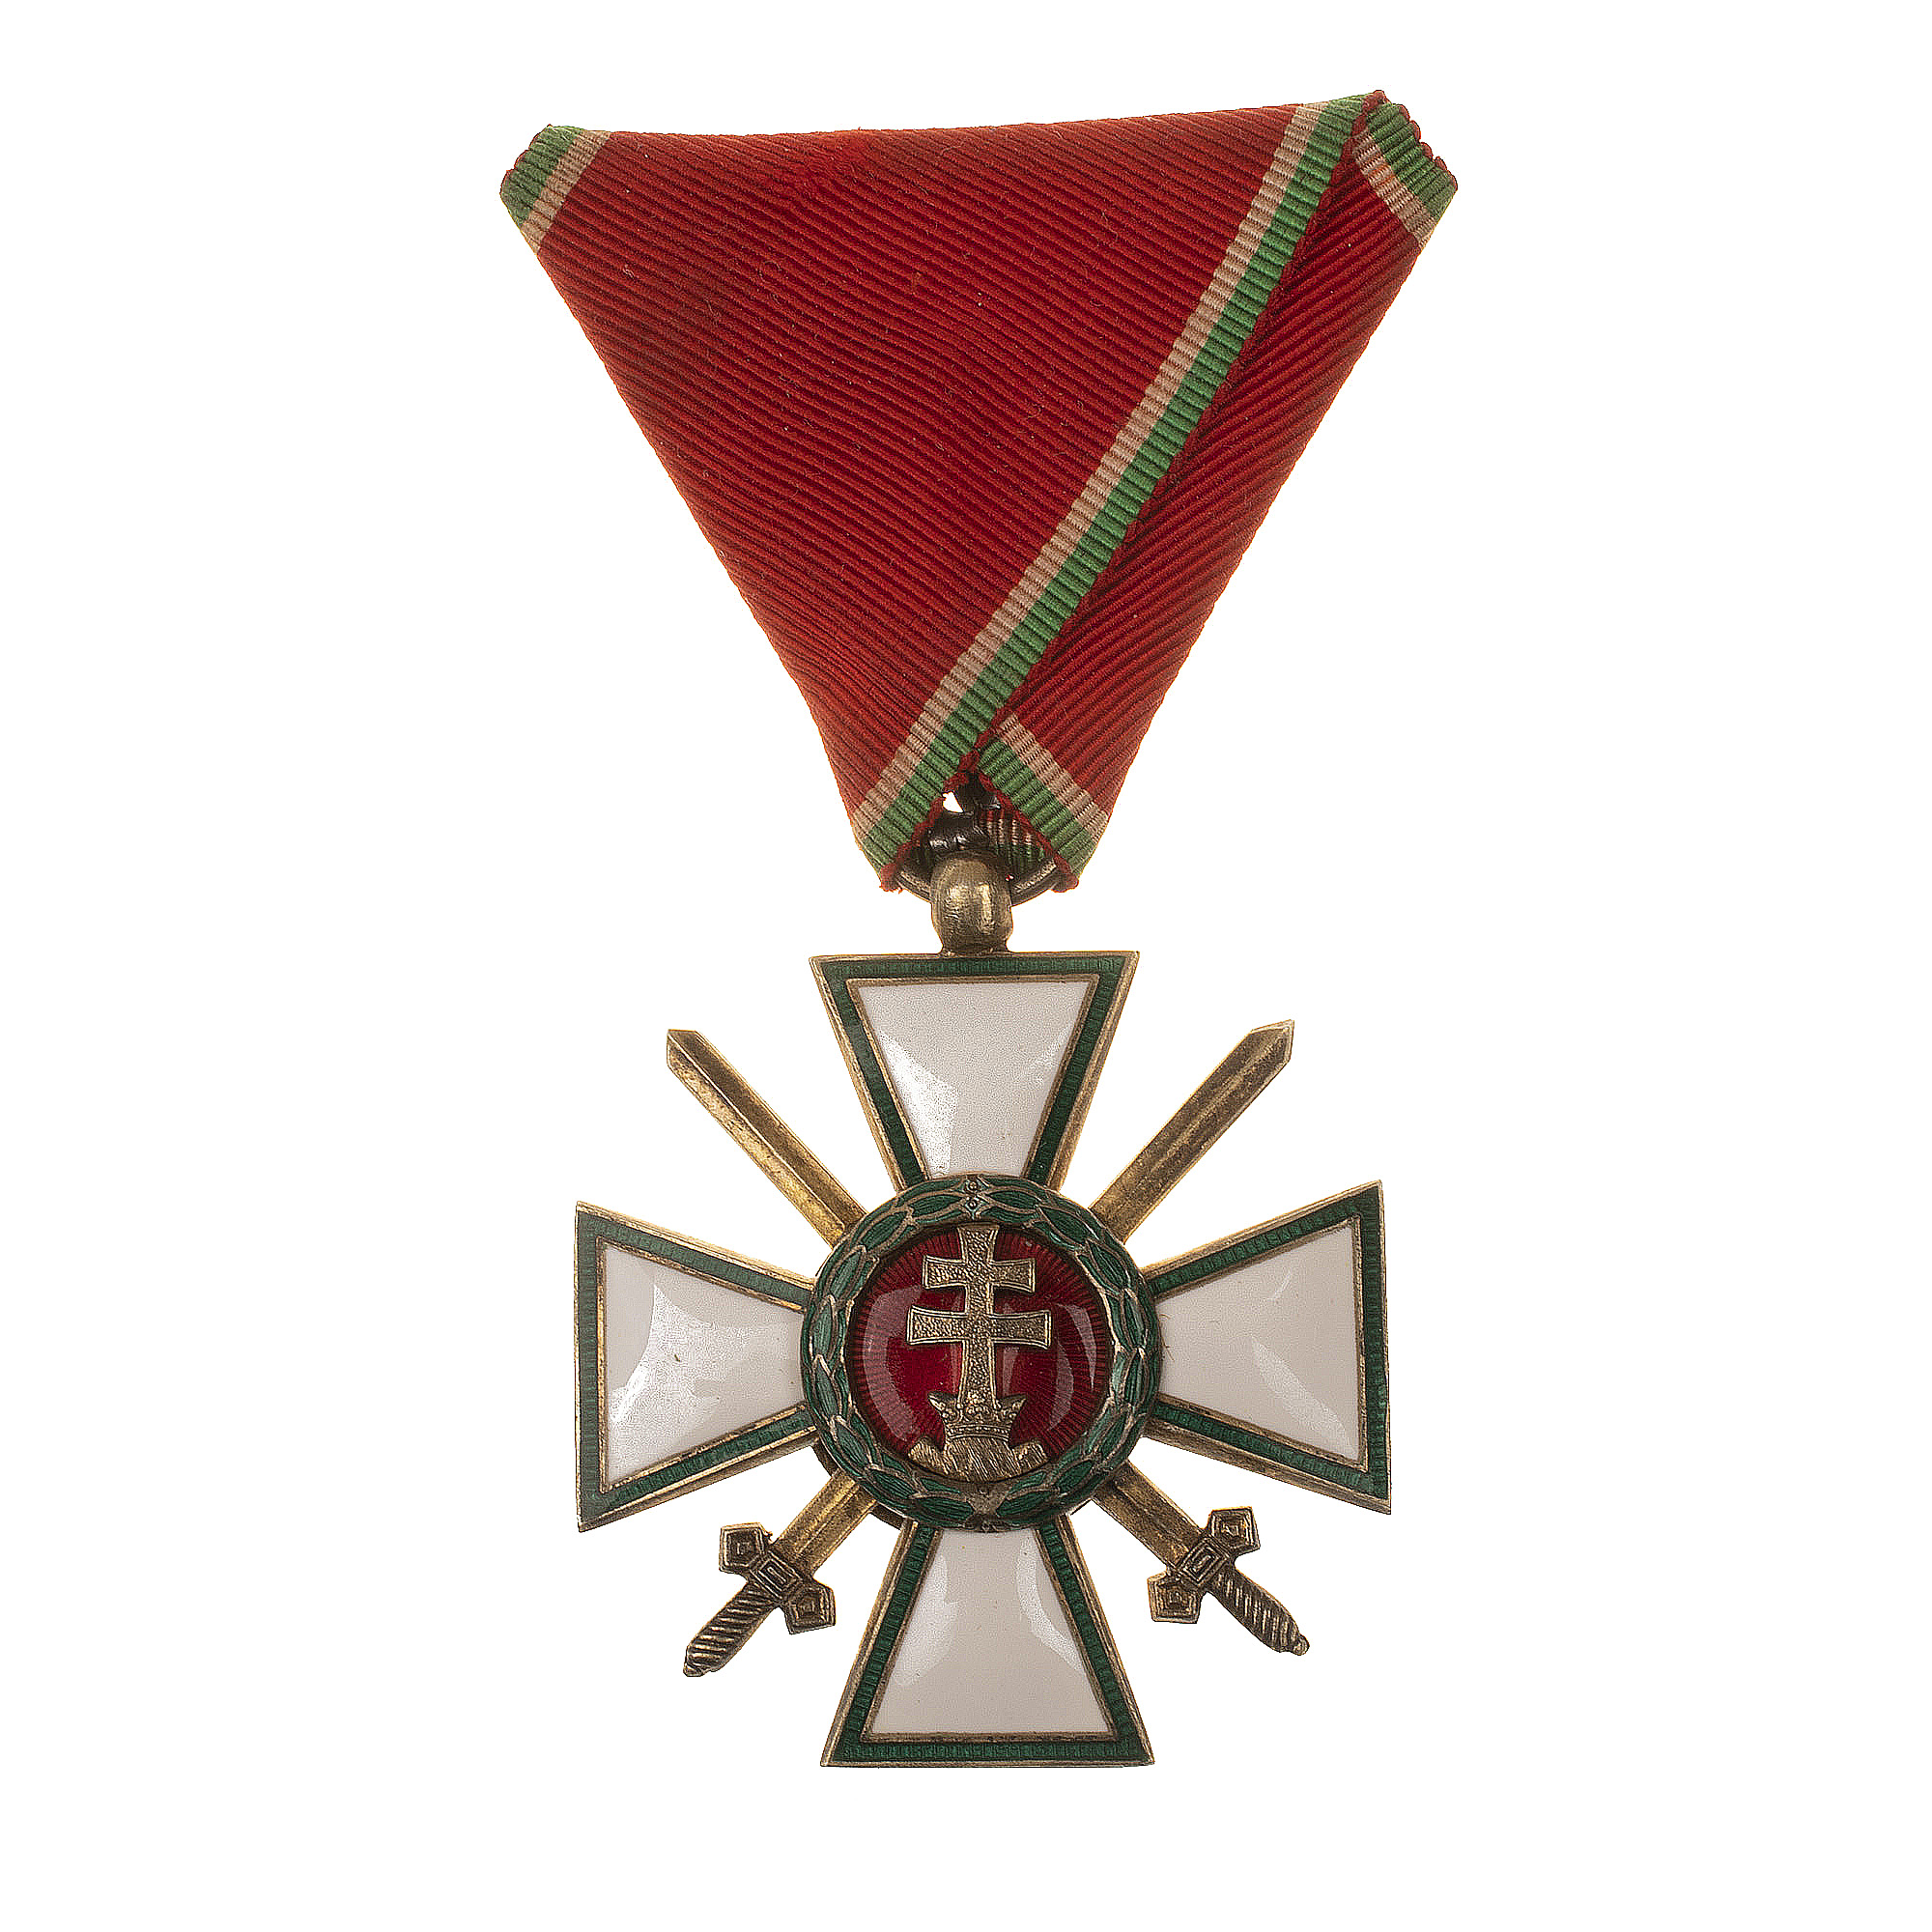 Венгрия (Королевство Венгрия 1920 - 1944 гг). Орден "За Заслуги" 4 степени (за военные заслуги). (Официальное название "Magyar Erdemrend").